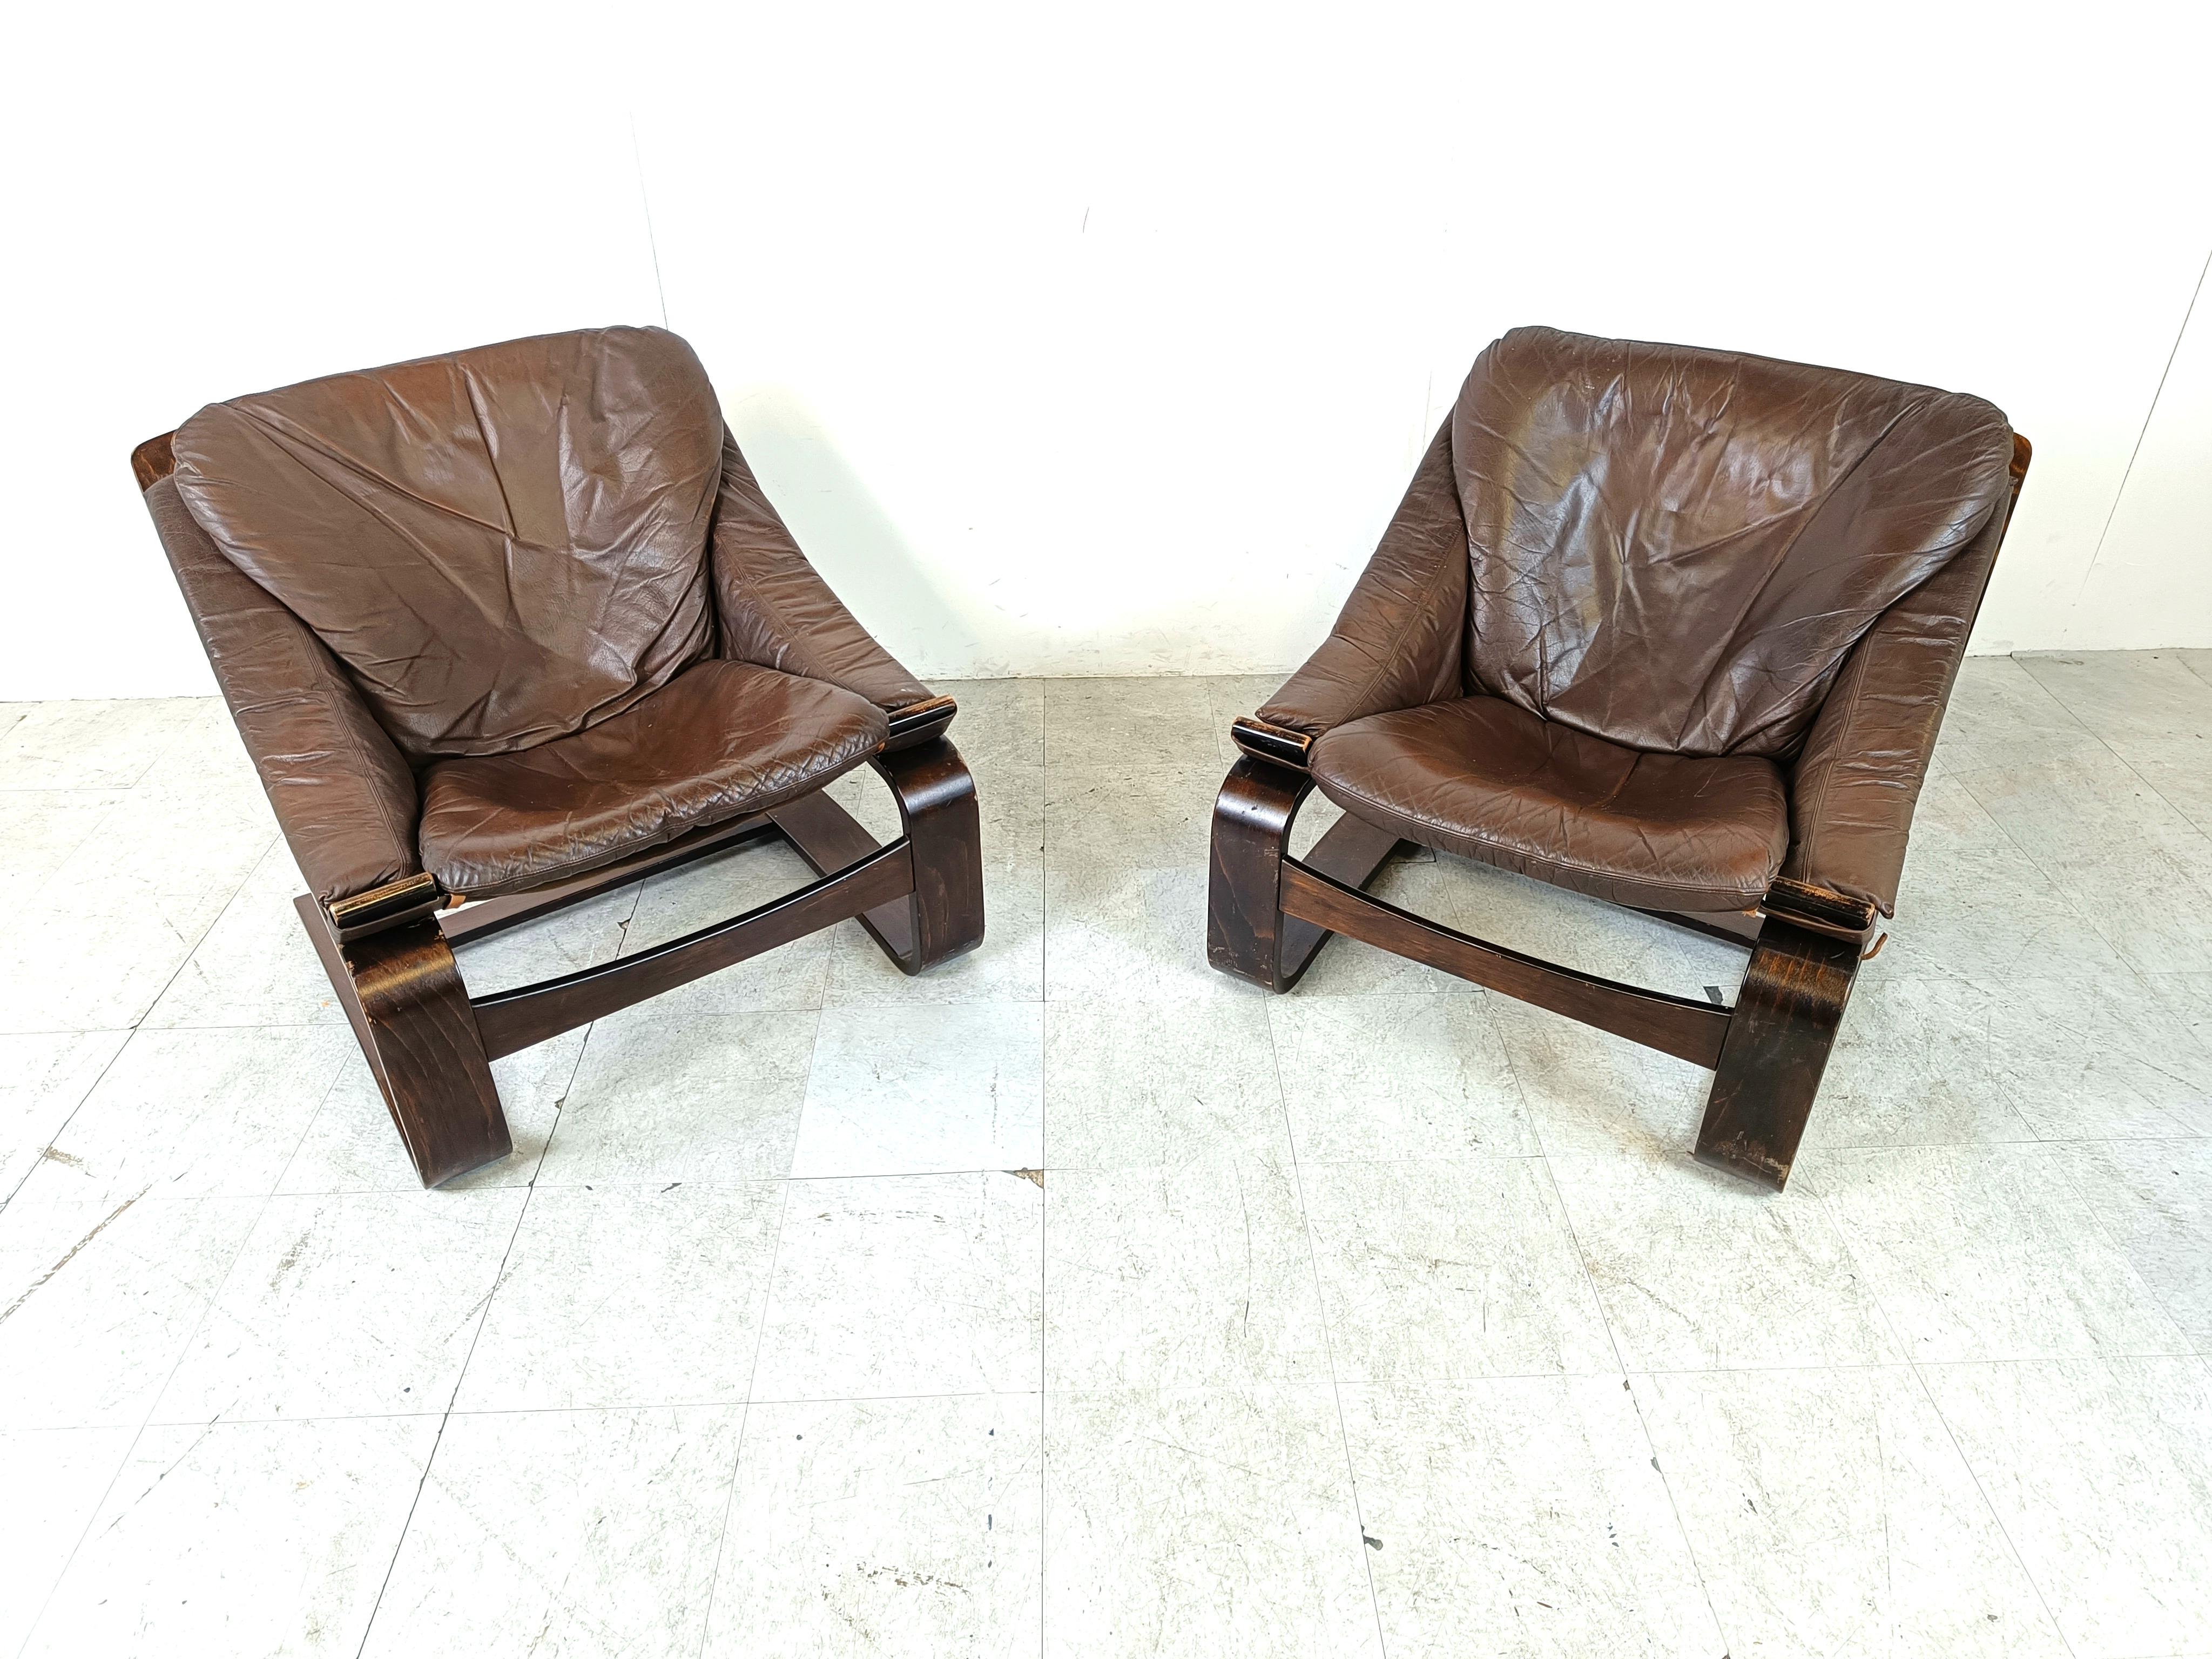 
Ein Paar Kroken-Sessel, entworfen von Ake Fribyter für Nelo Möbel in den 1970er Jahren.

Stabile Bugholzrahmen aus Buche mit dicken Lederkissen.

Cooles freitragendes Design

1970er Jahre - Schweden

Sie können für die Lieferung demontiert